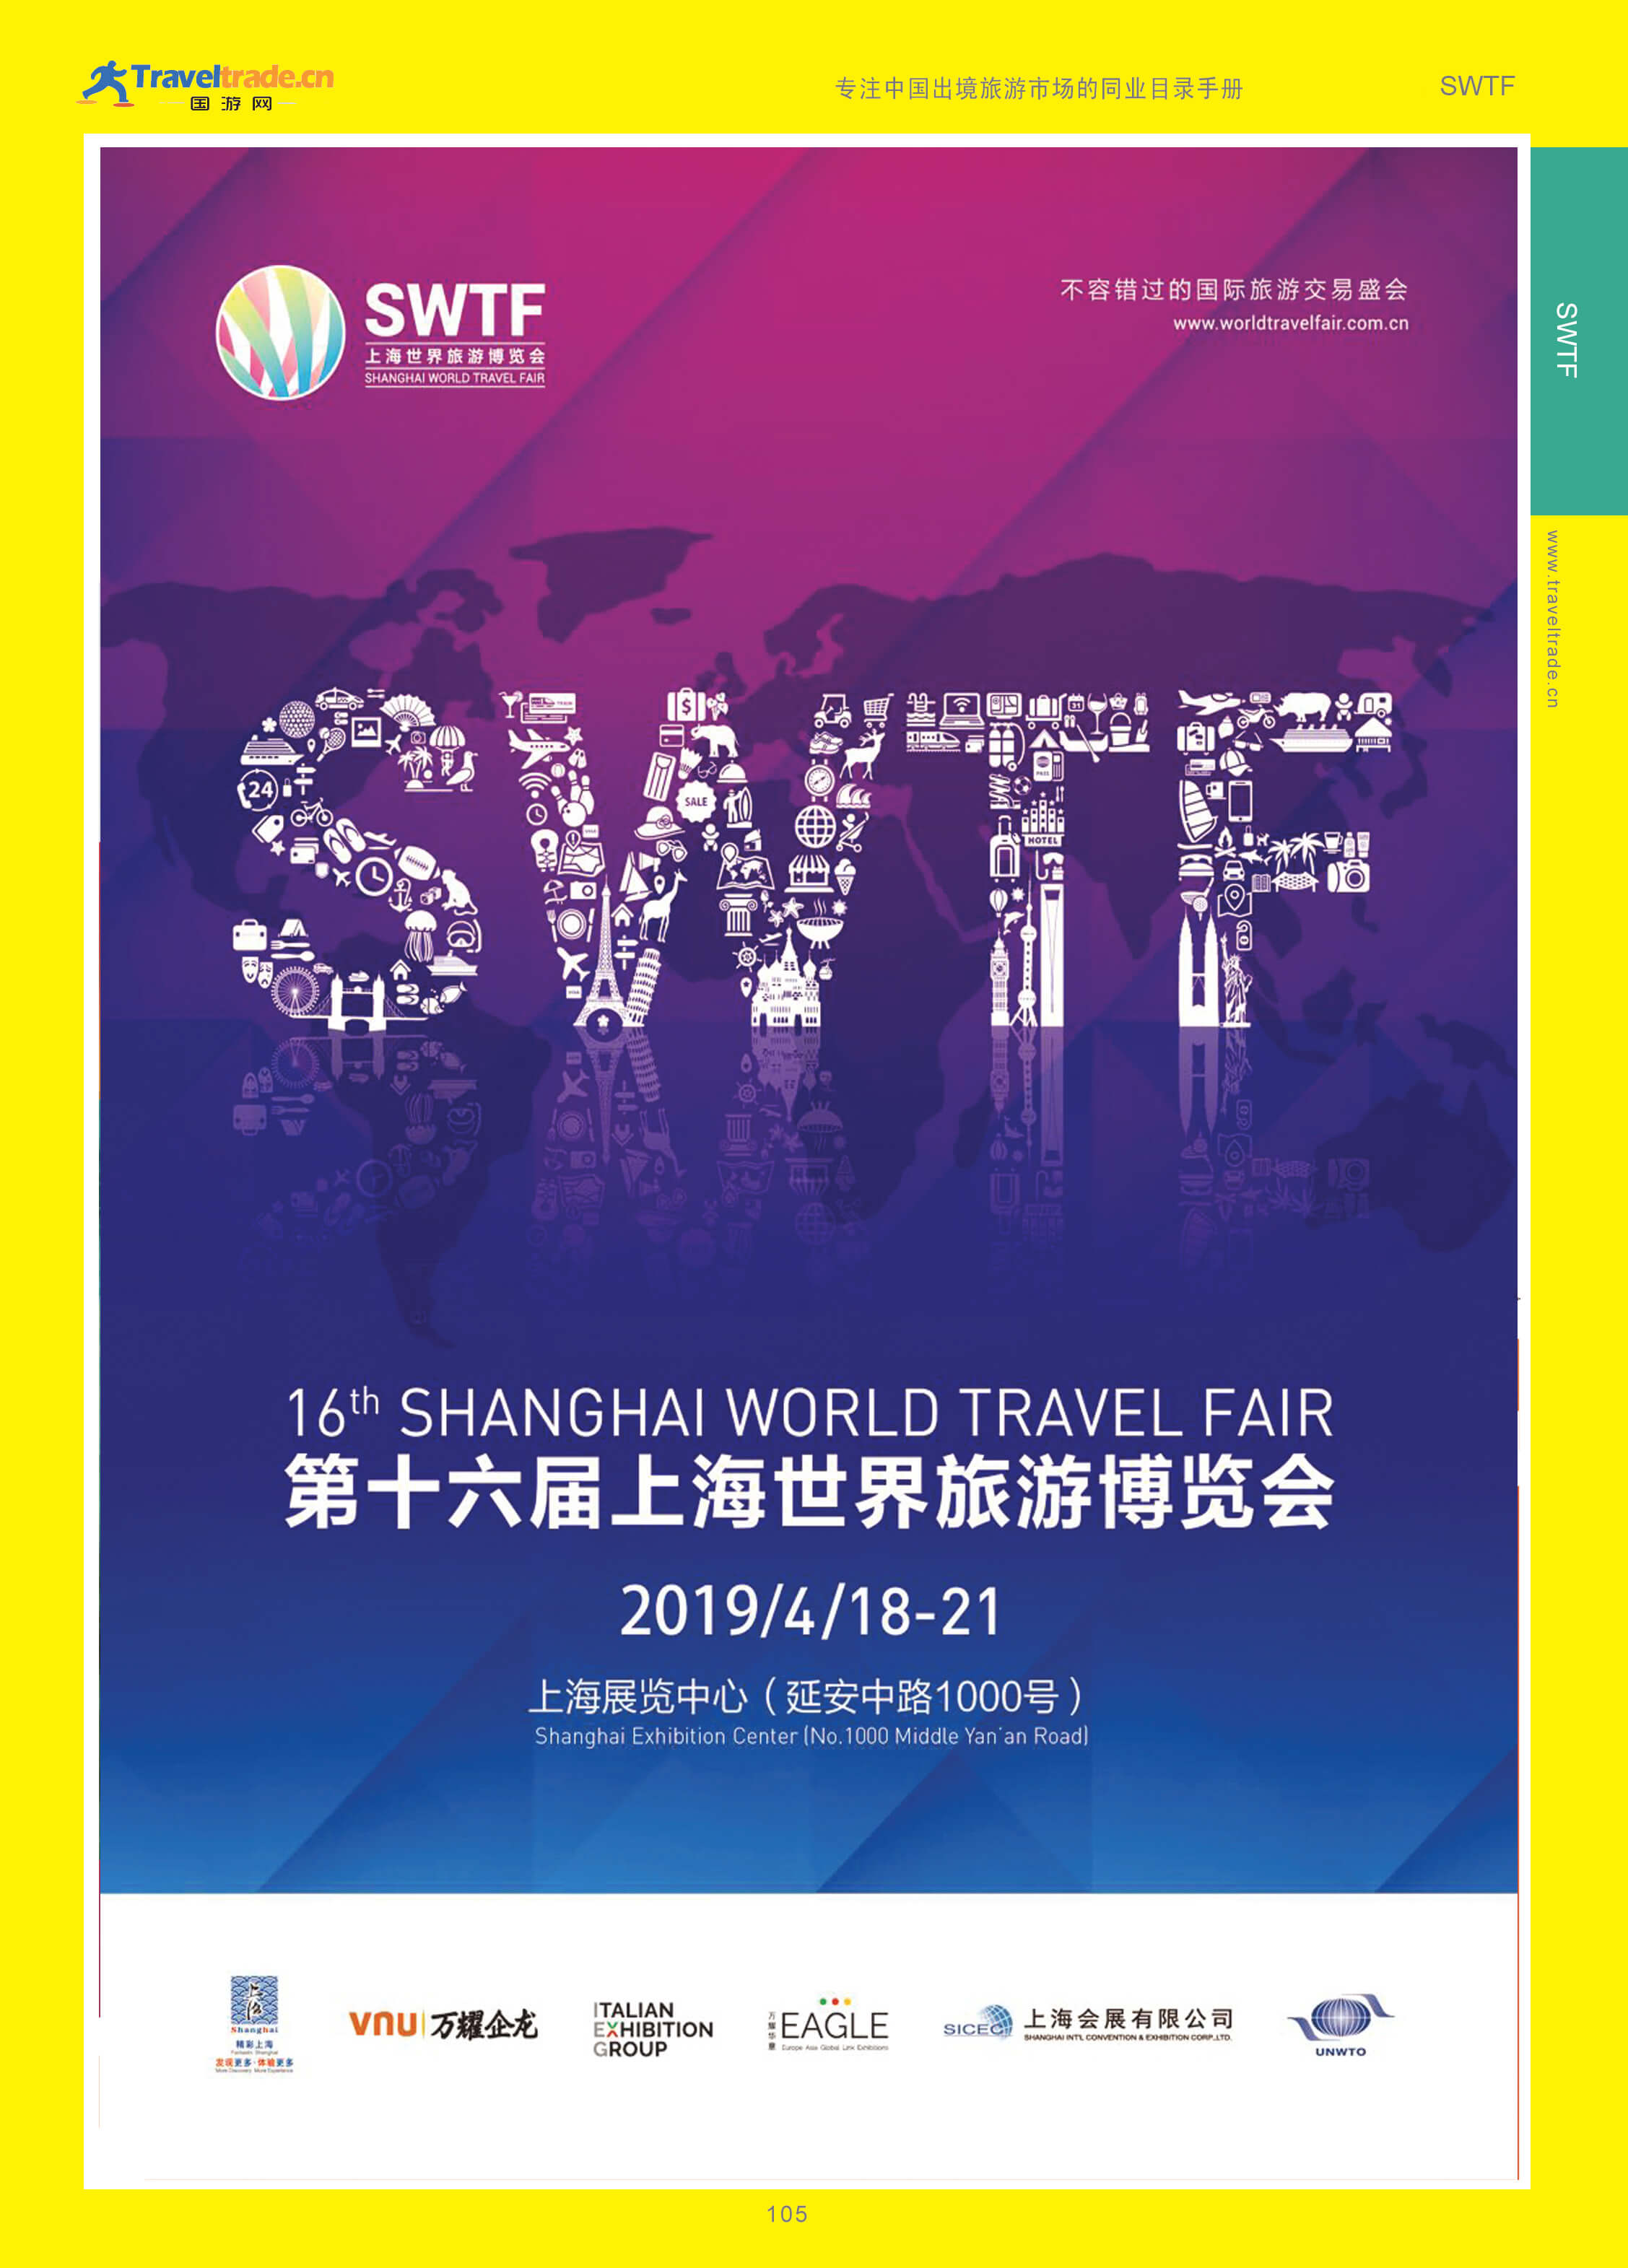 105 上海世界旅游博览会(SWTF).jpg